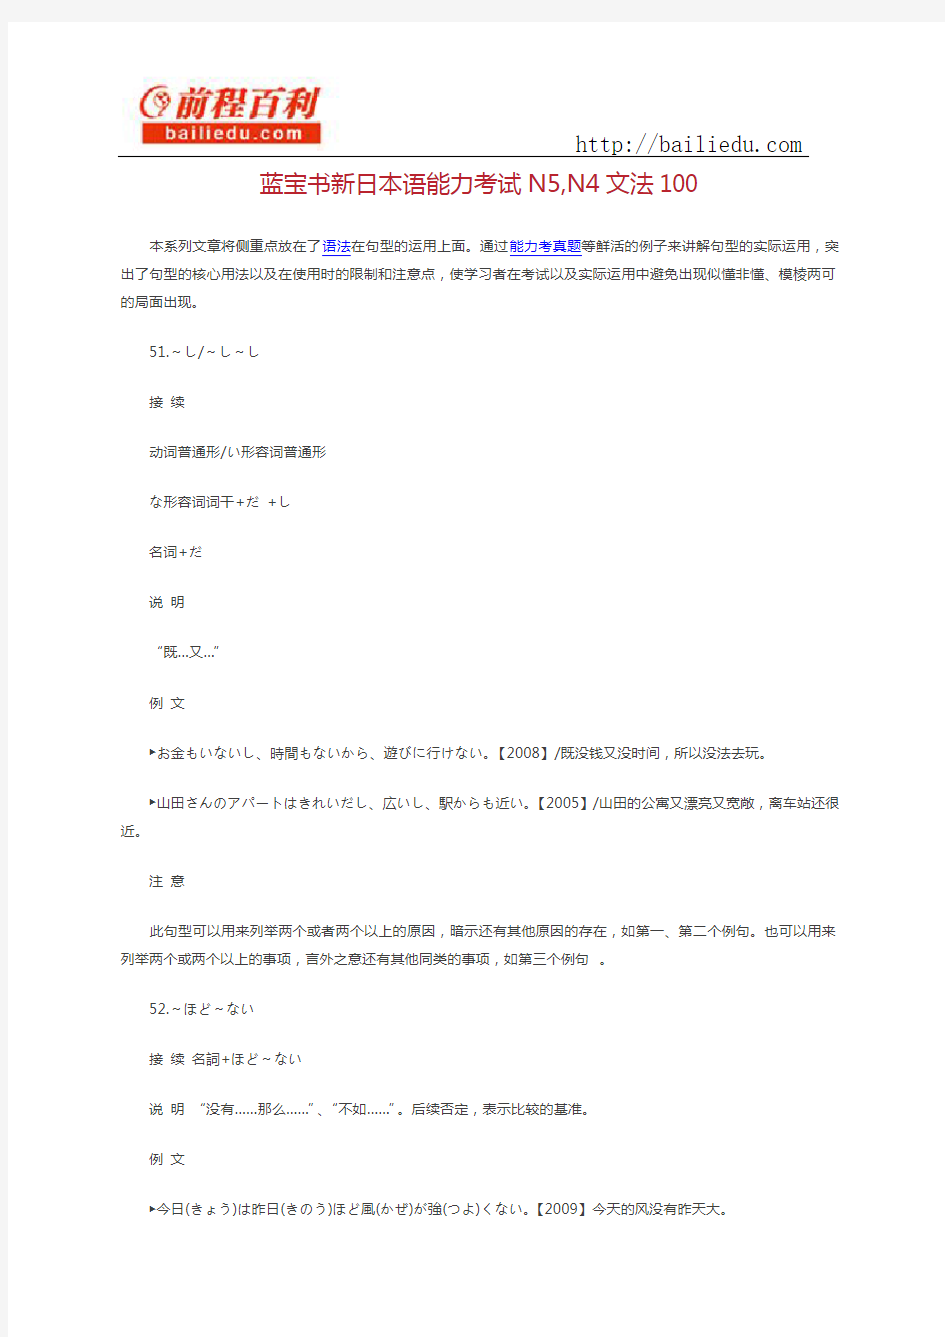 蓝宝书新日本语能力考试N5,N4文法100